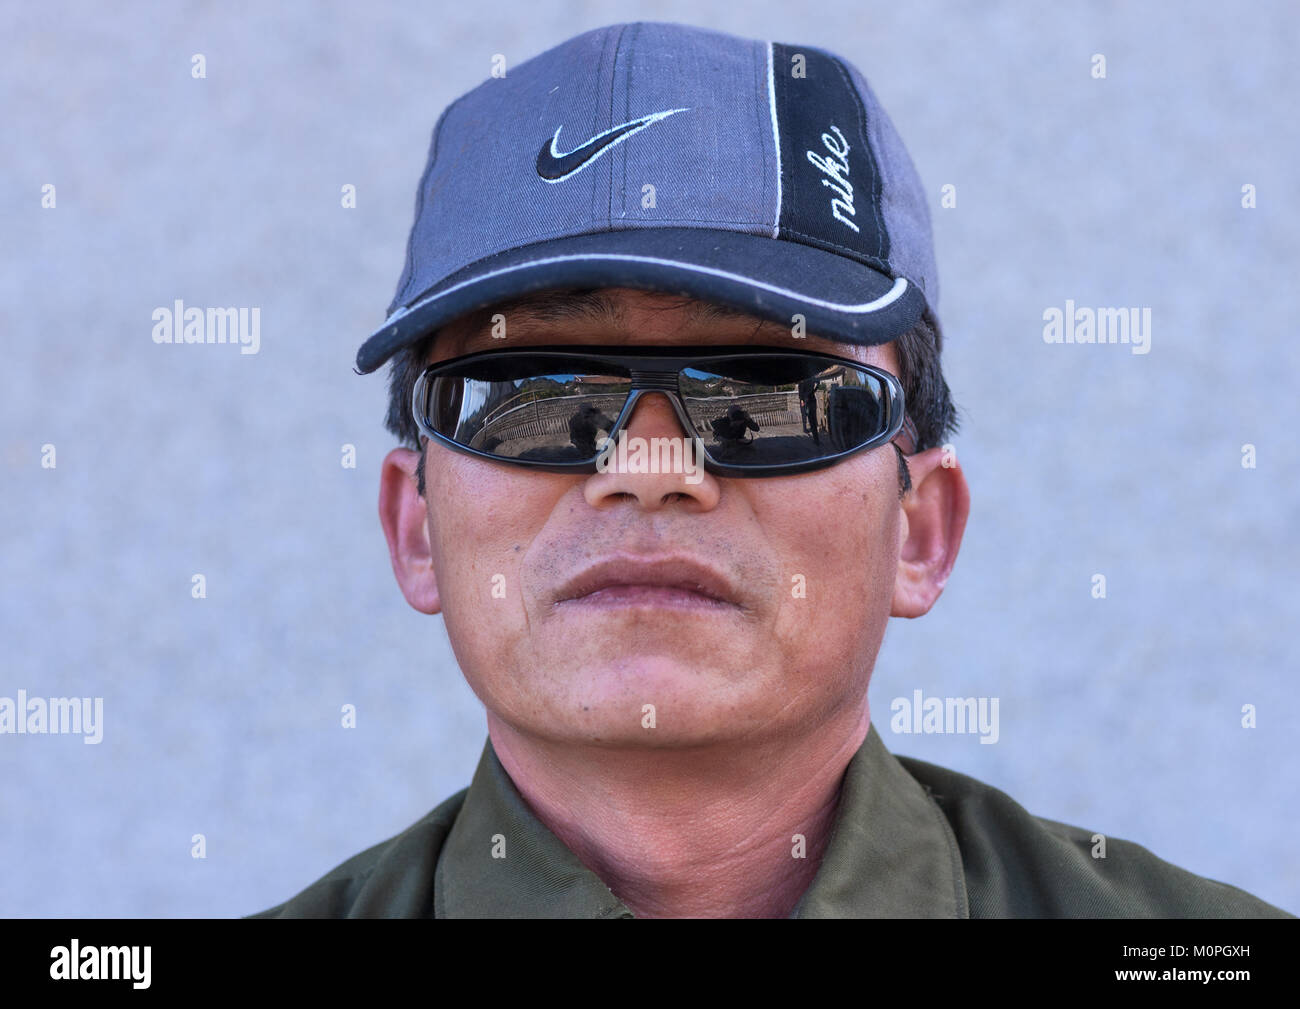 Corea del Norte hombre vestido con una gorra y gafas de sol de Nike, en el  norte de la provincia de Hamgyong, Jung RI Pyong, Corea del Norte  Fotografía de stock -